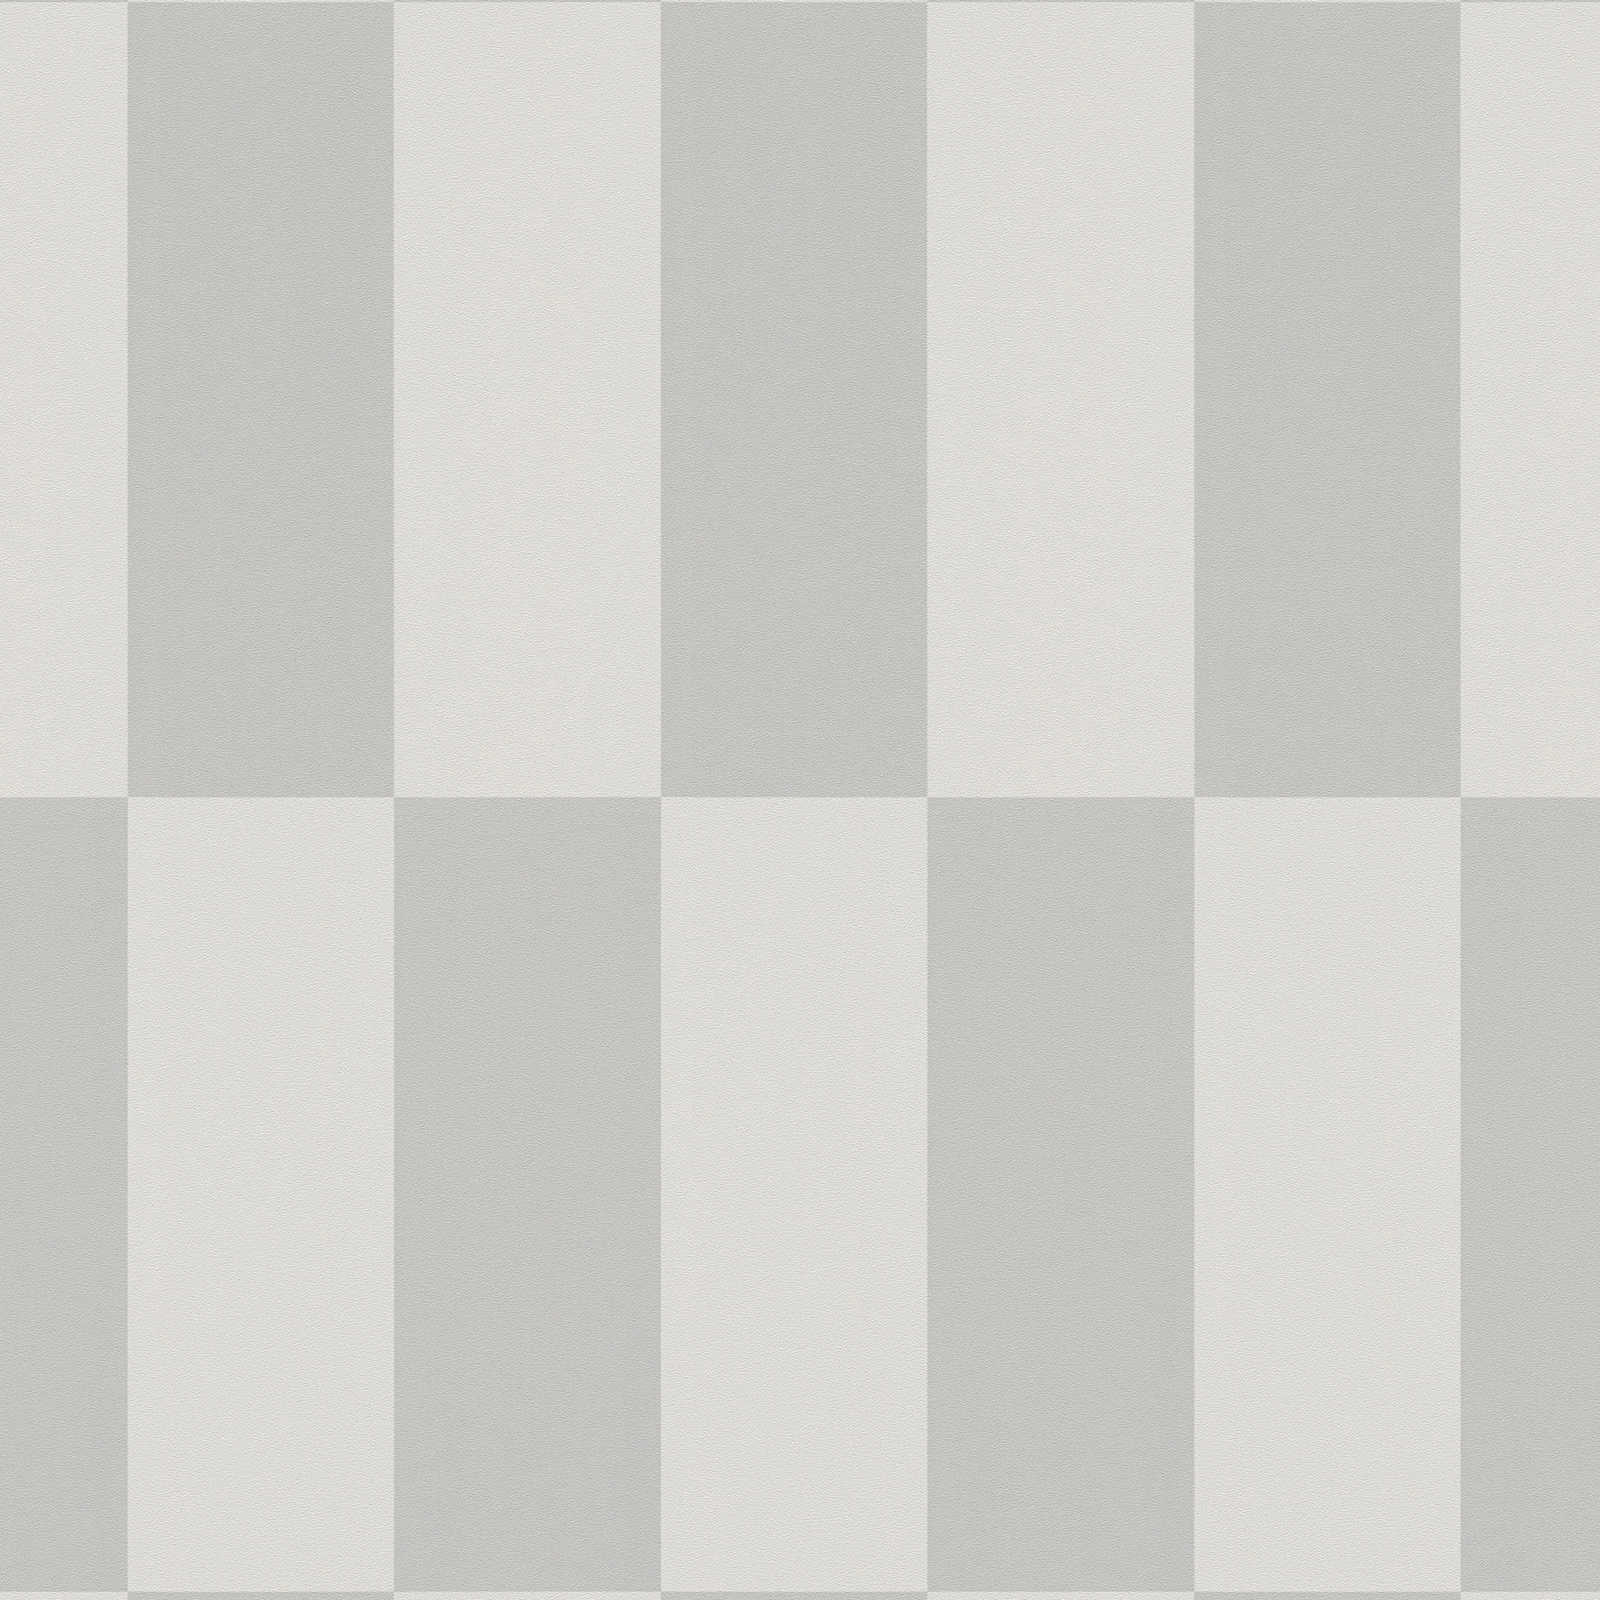             Vliesbehang met grafisch vierkant patroon - grijs
        